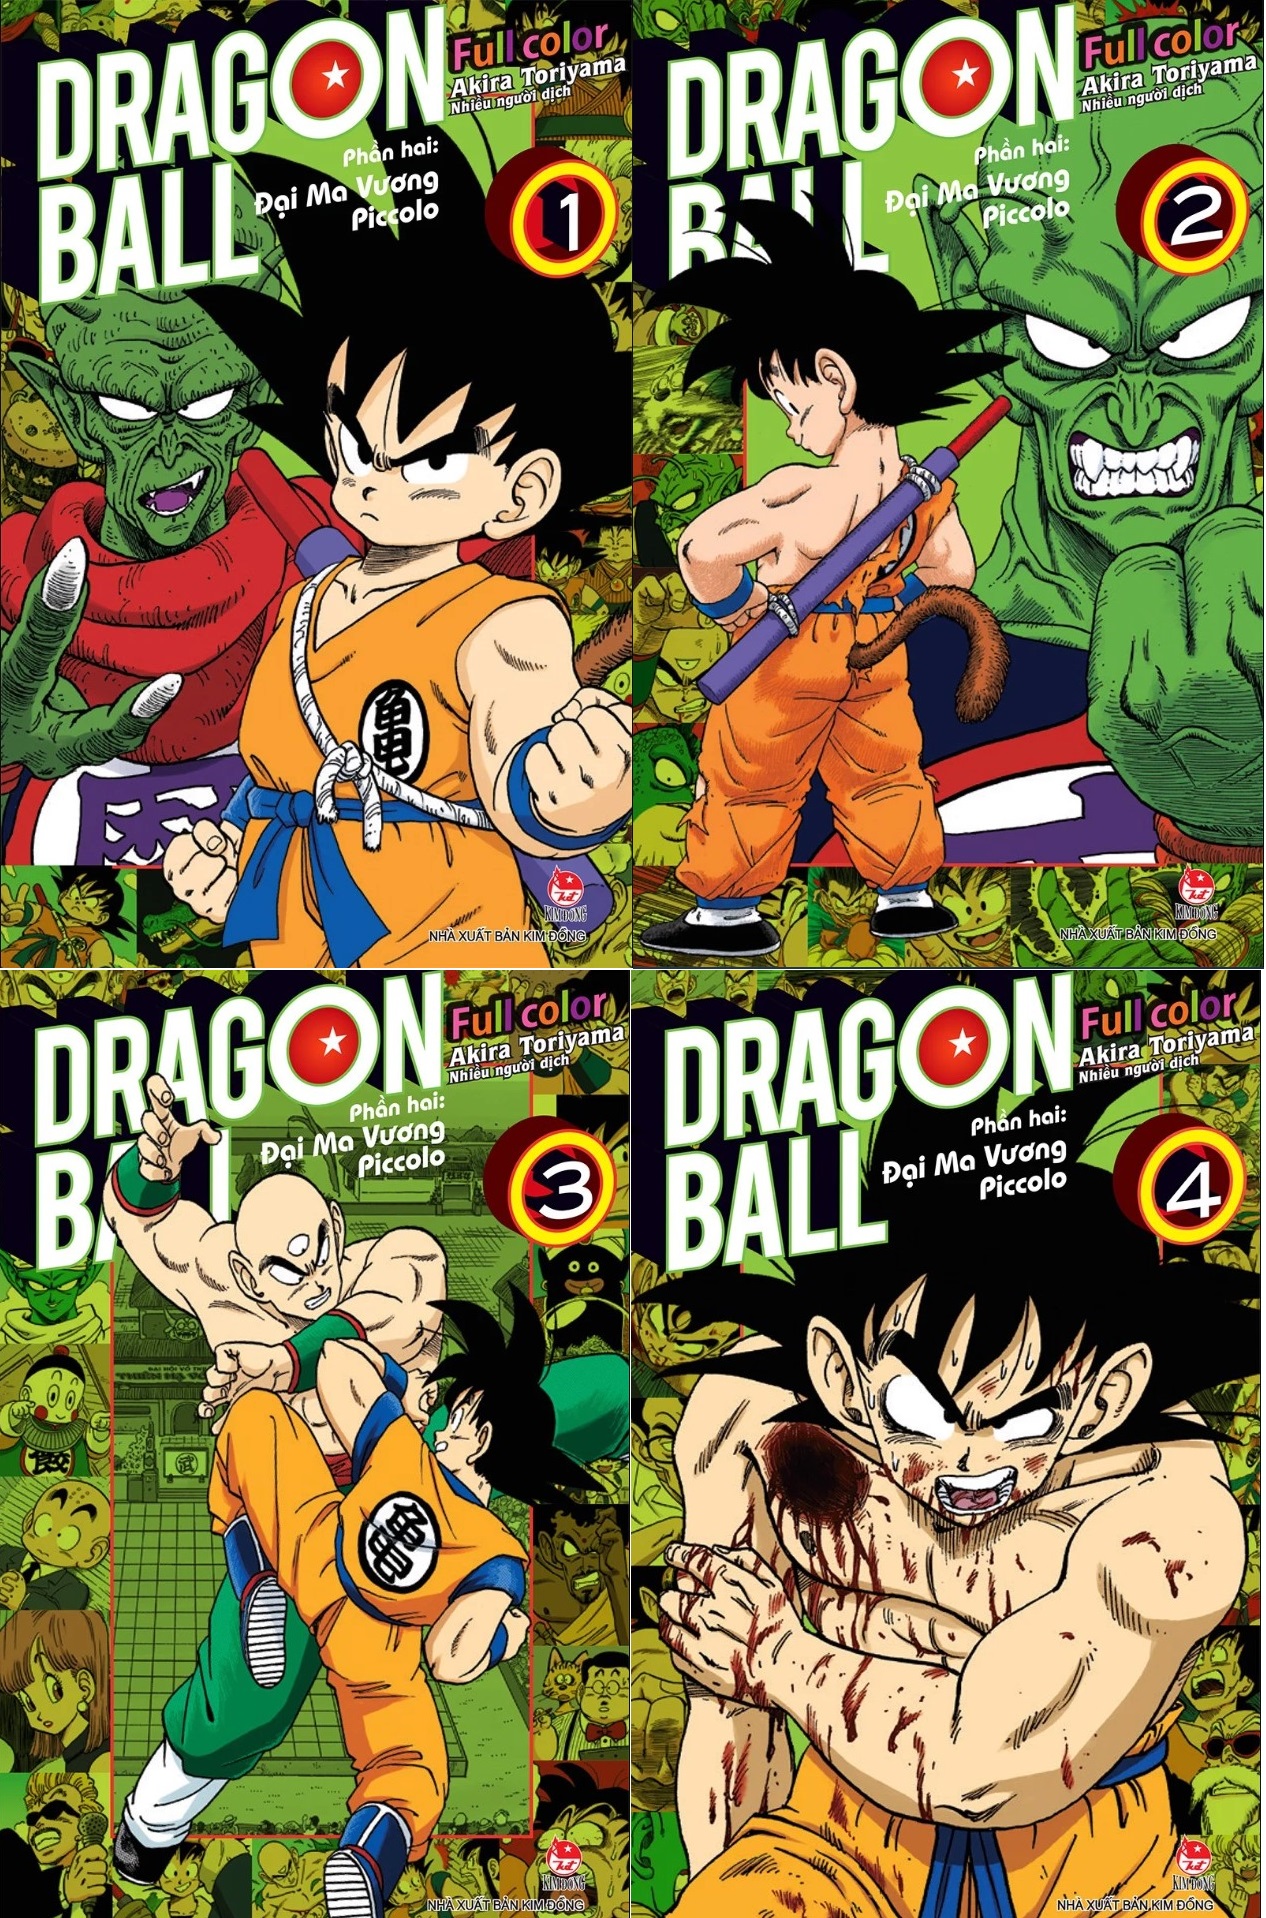 Truyện tranh - Dragon Ball Full Color - Từ phần 1 đến phần 6